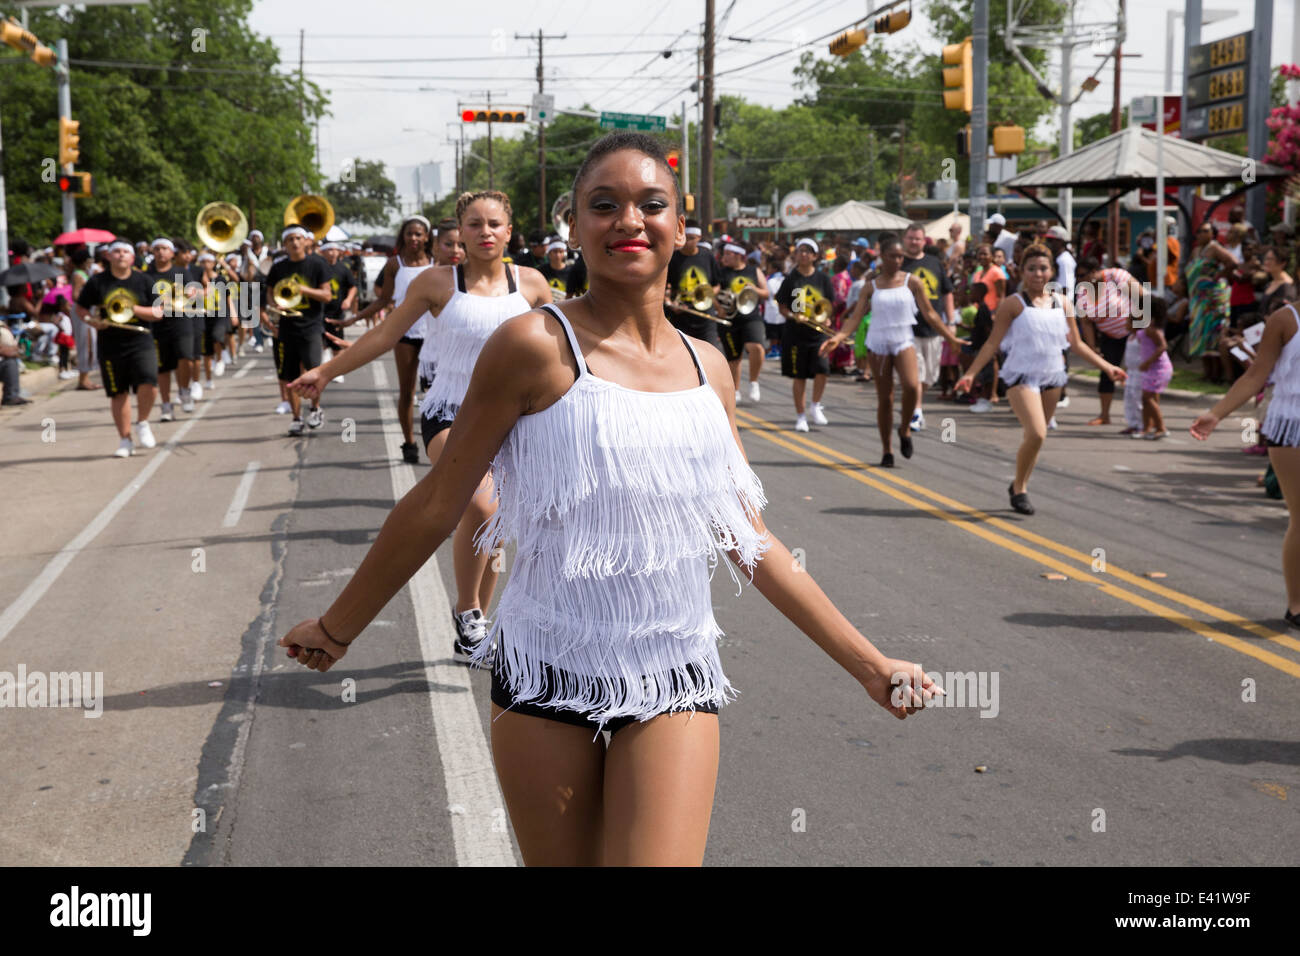 Die Juneteenth-Parade in Austin, Texas, umfasst Marschkapellen, Menschenmengen, Tänzer, Politiker und Polizei. Stockfoto